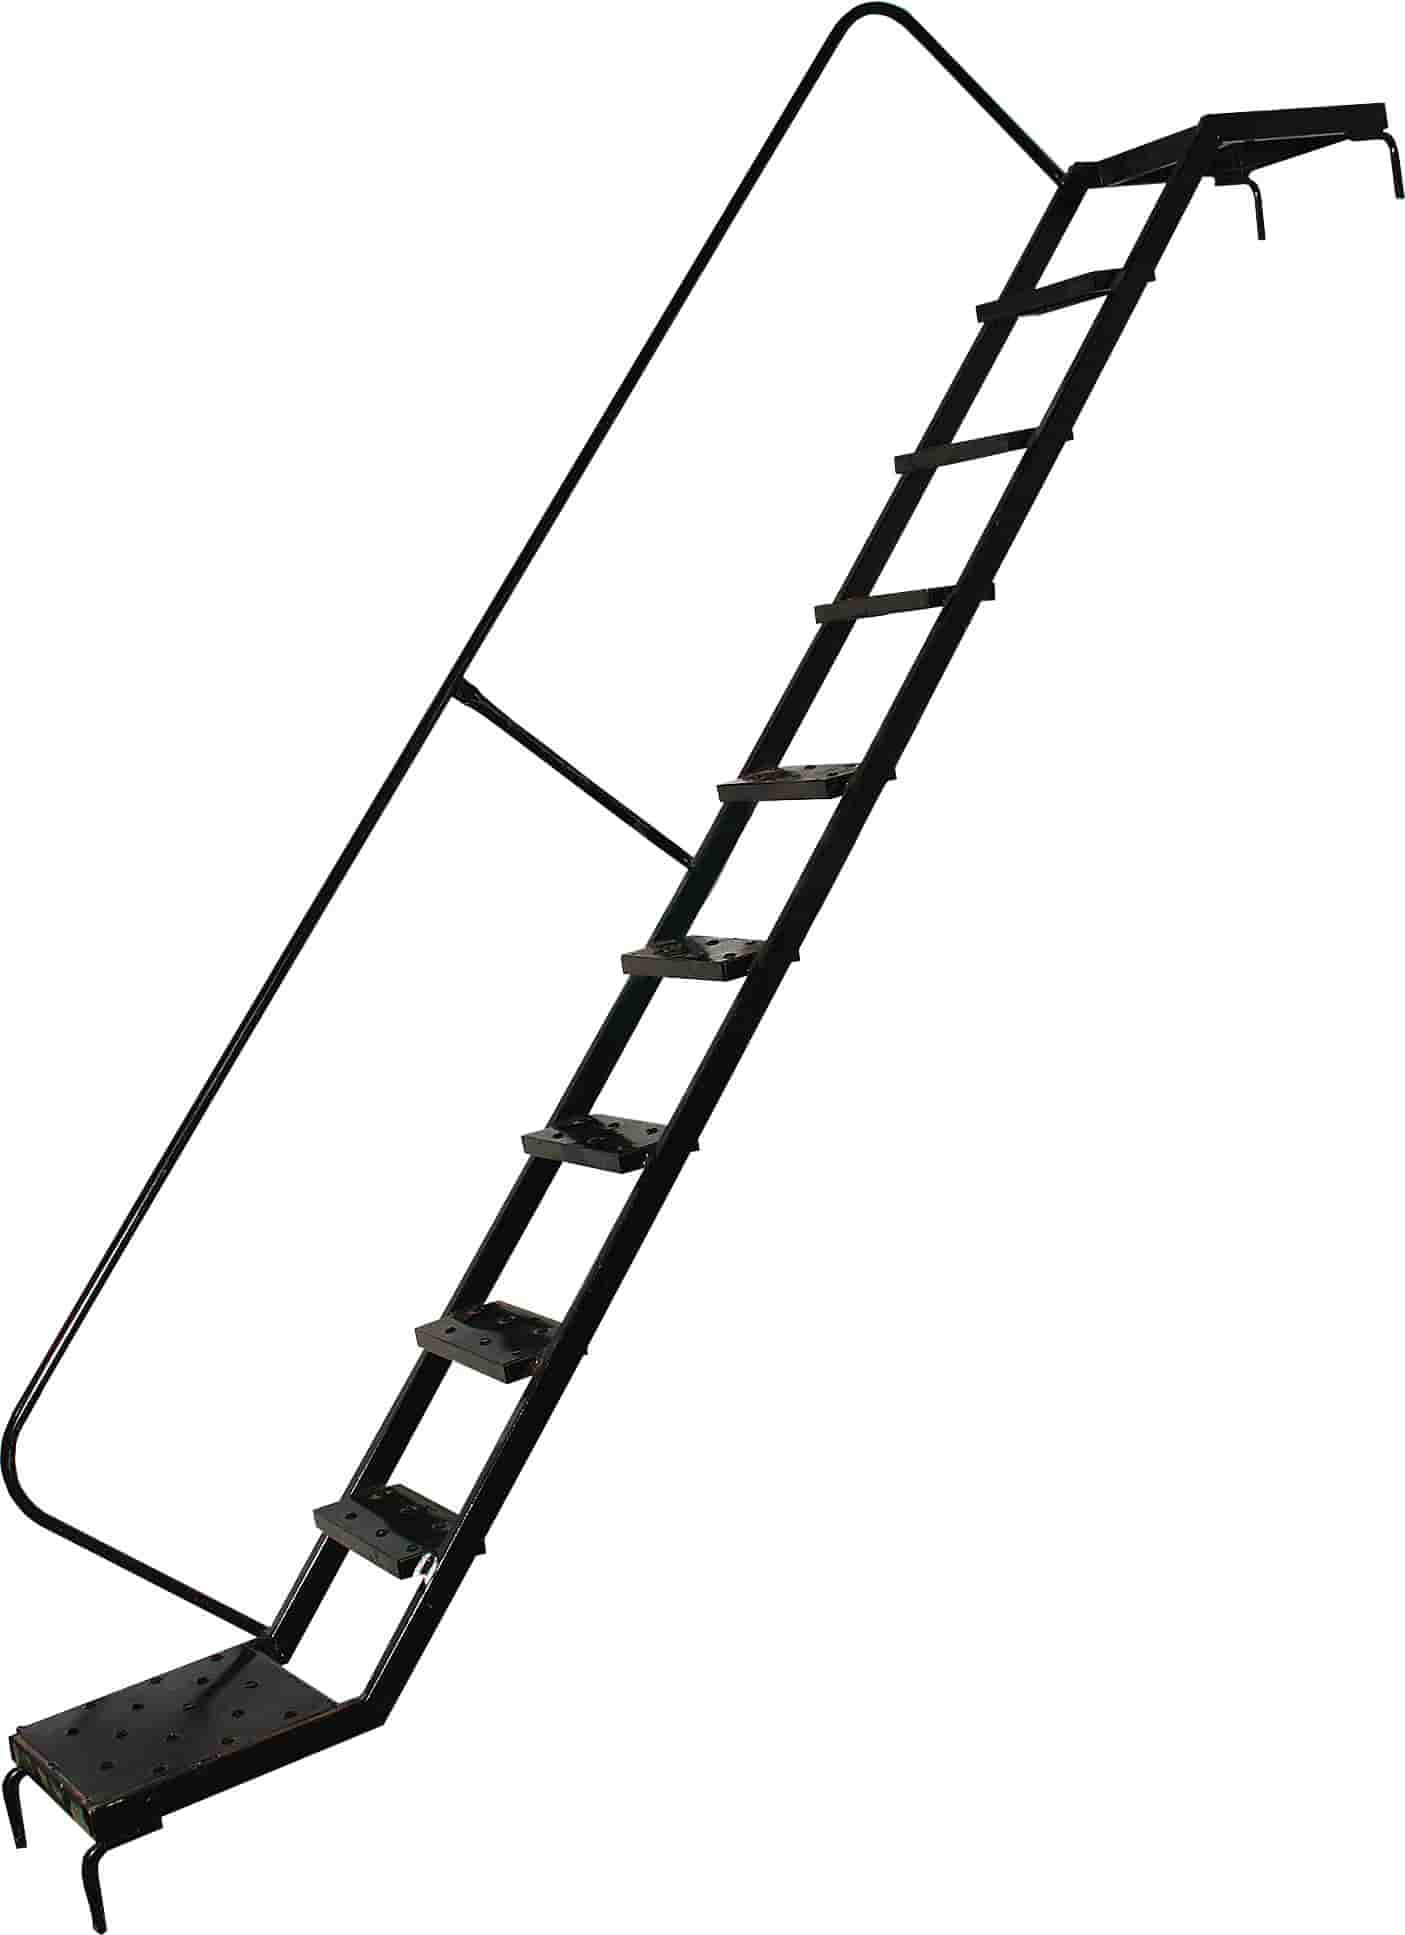 Дополнительное изображение ВТК-1 рабочая высота 4,7 м, размер площадки (1x2 м)